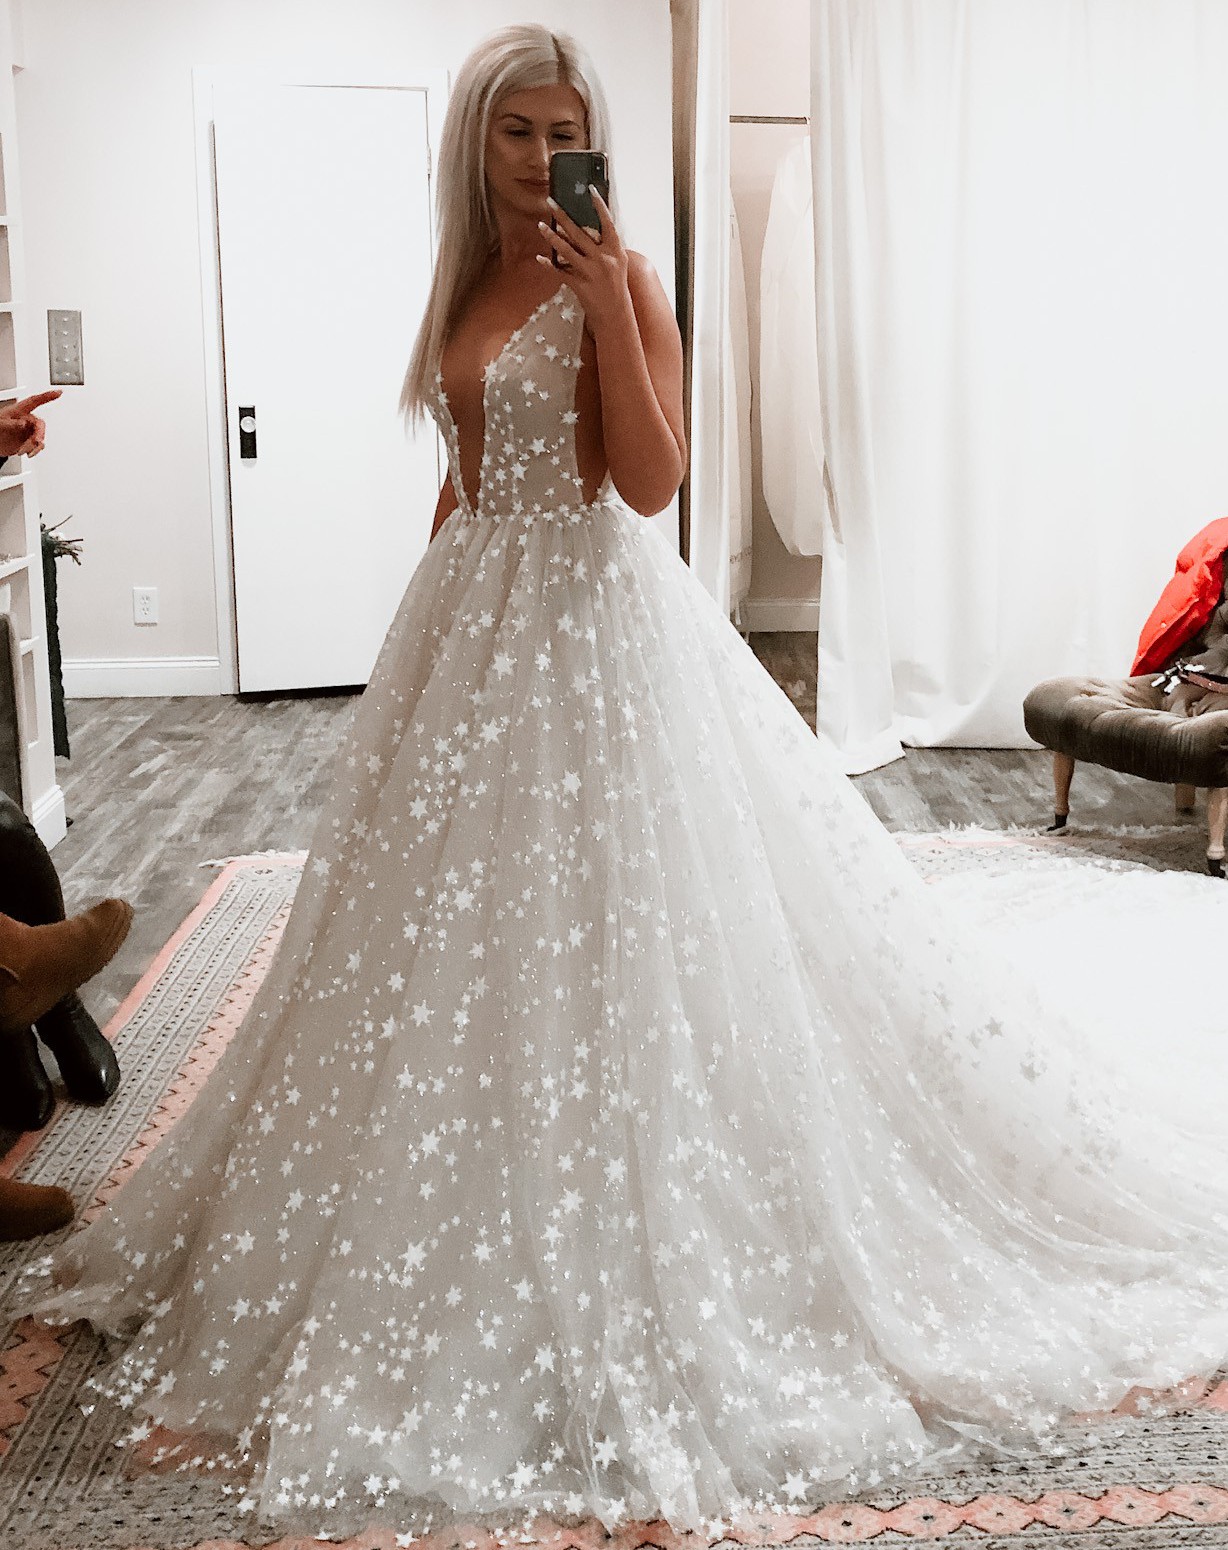 Galia Lahav New Wedding Dress Save 23% - Stillwhite